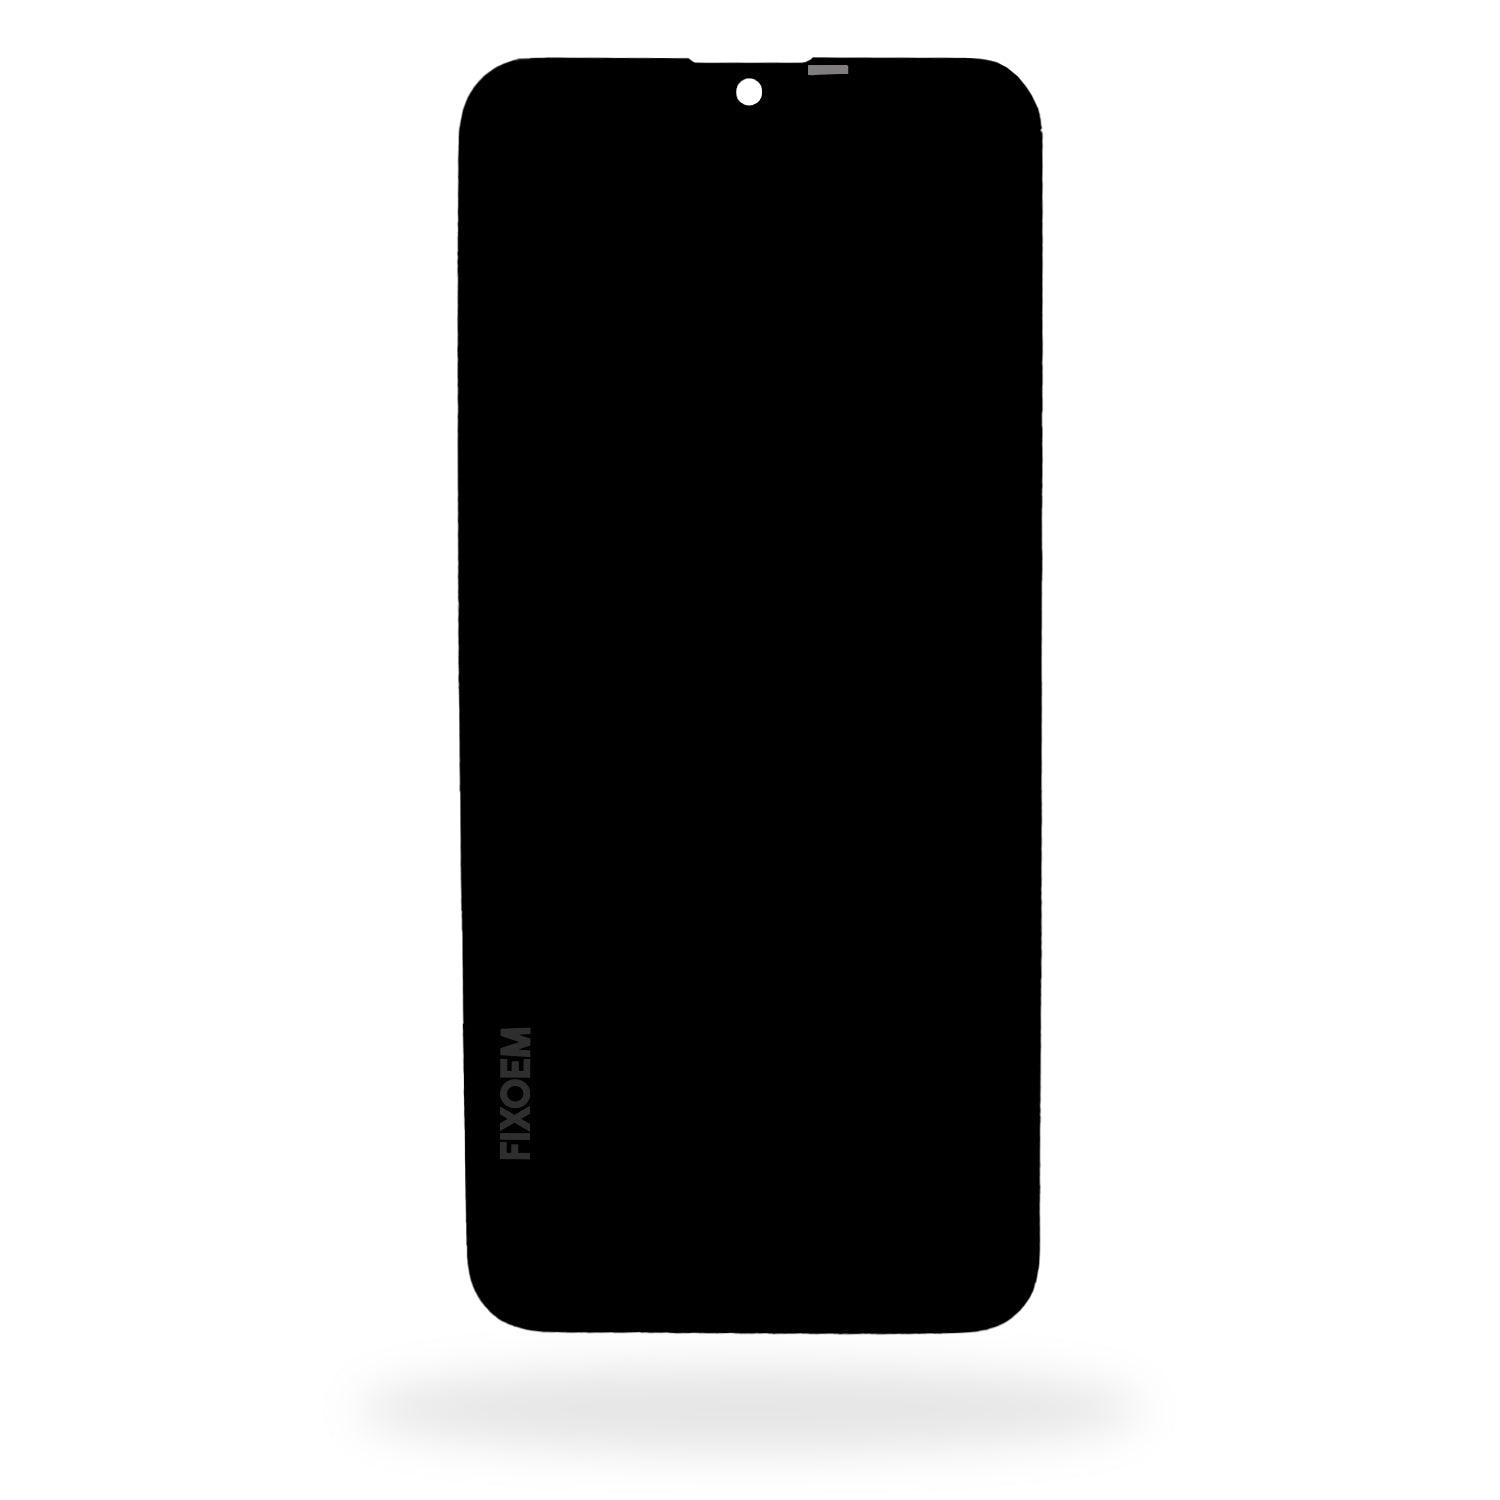 Display Nokia 2.3 Ips Ta-1214. a solo $ 250.00 Refaccion y puestos celulares, refurbish y microelectronica.- FixOEM